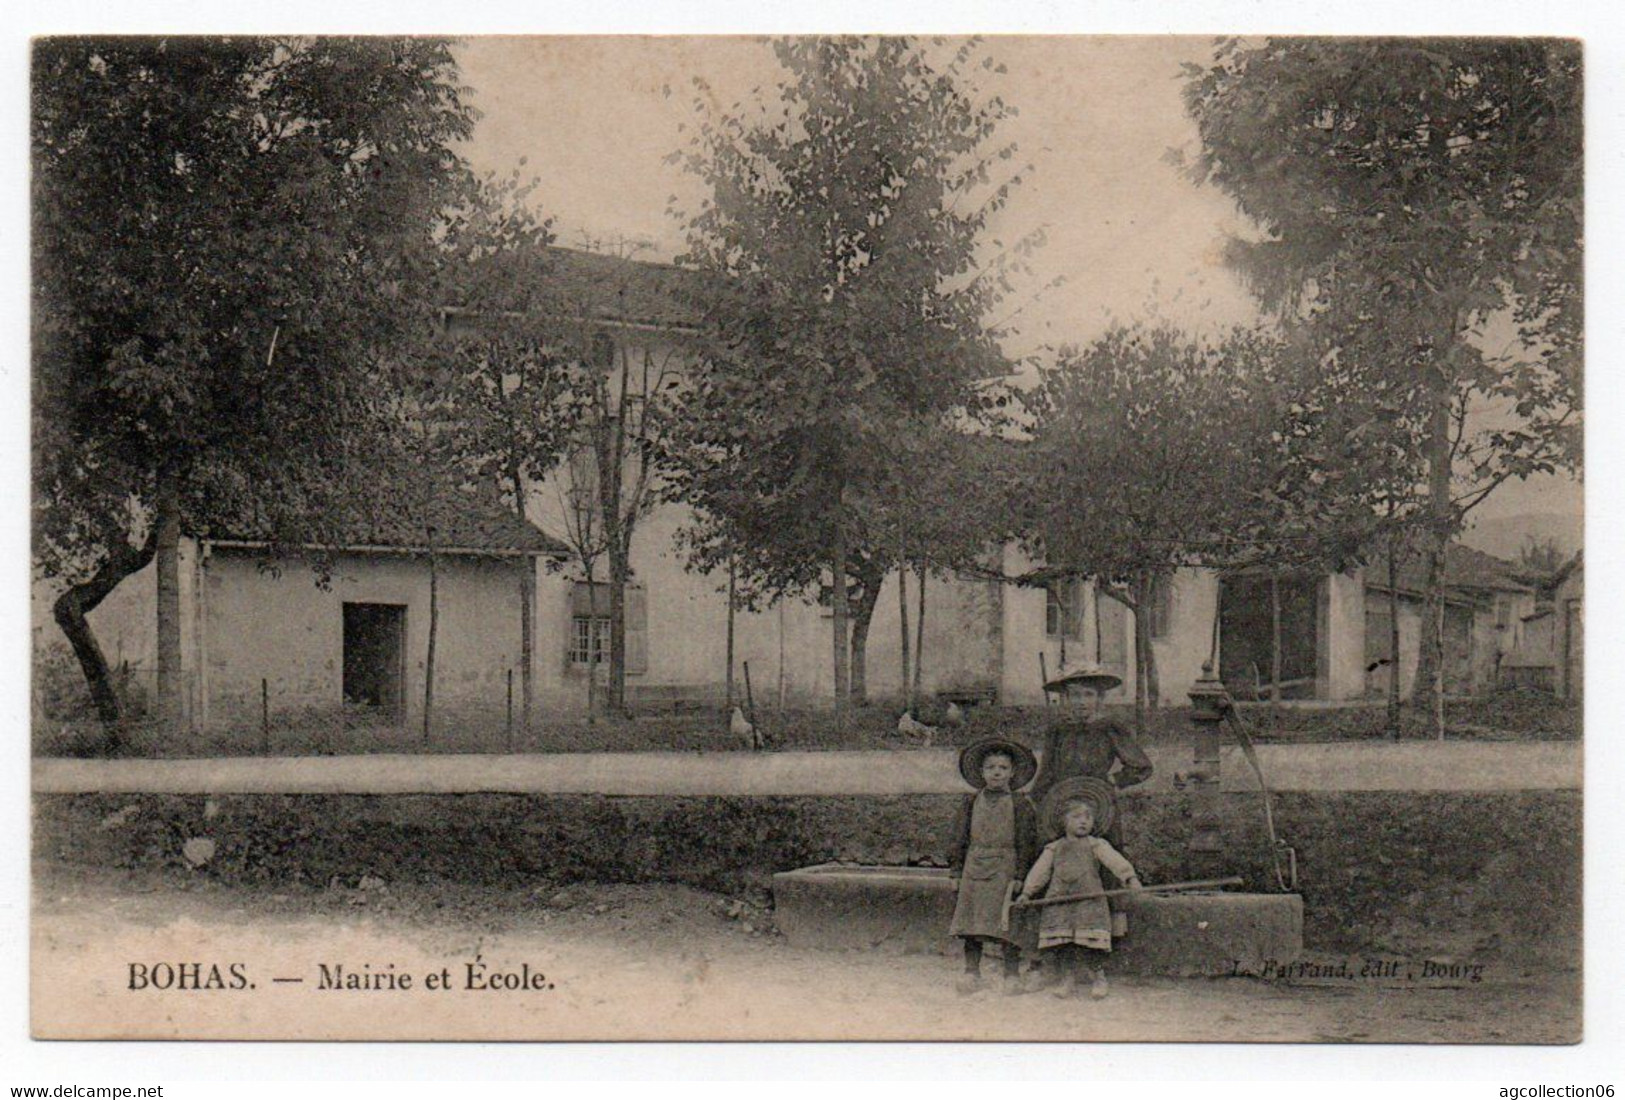 BOHAS. MAIRIE ET ECOLE - Bellegarde-sur-Valserine